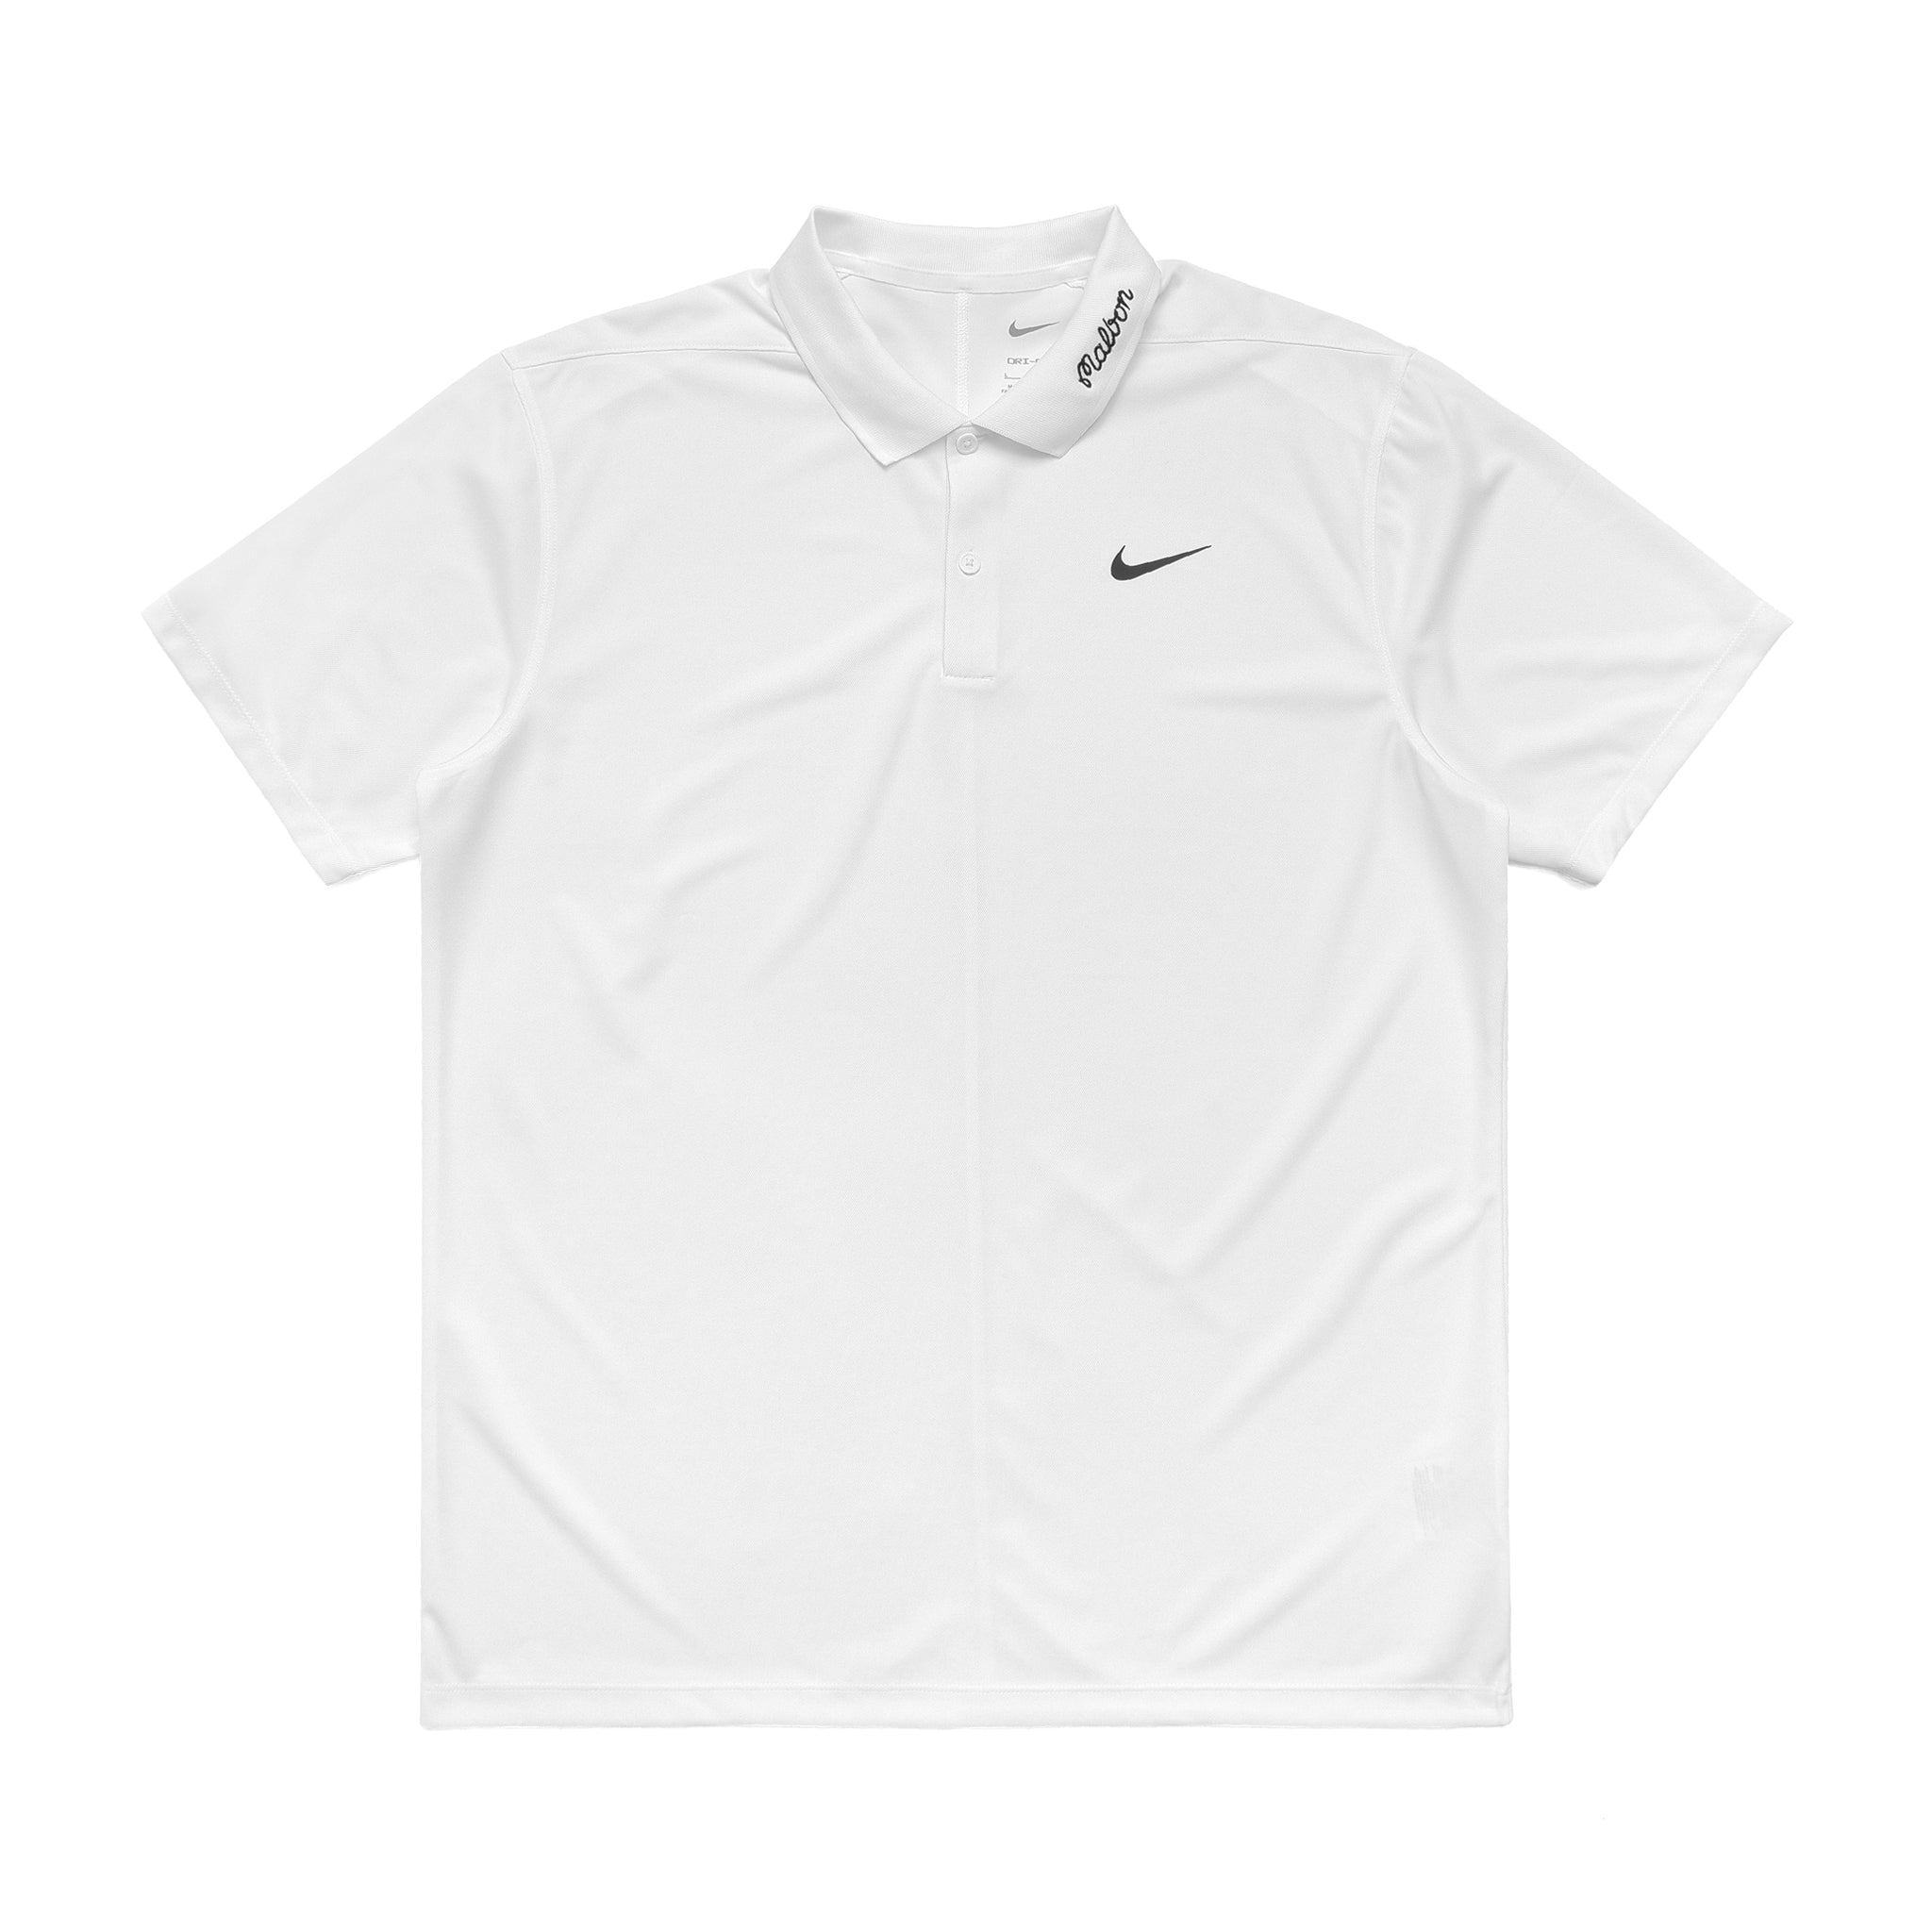 Malbon Golf x Nike Dri-FIT Victory Solid Polo White/Black - SS22 - US